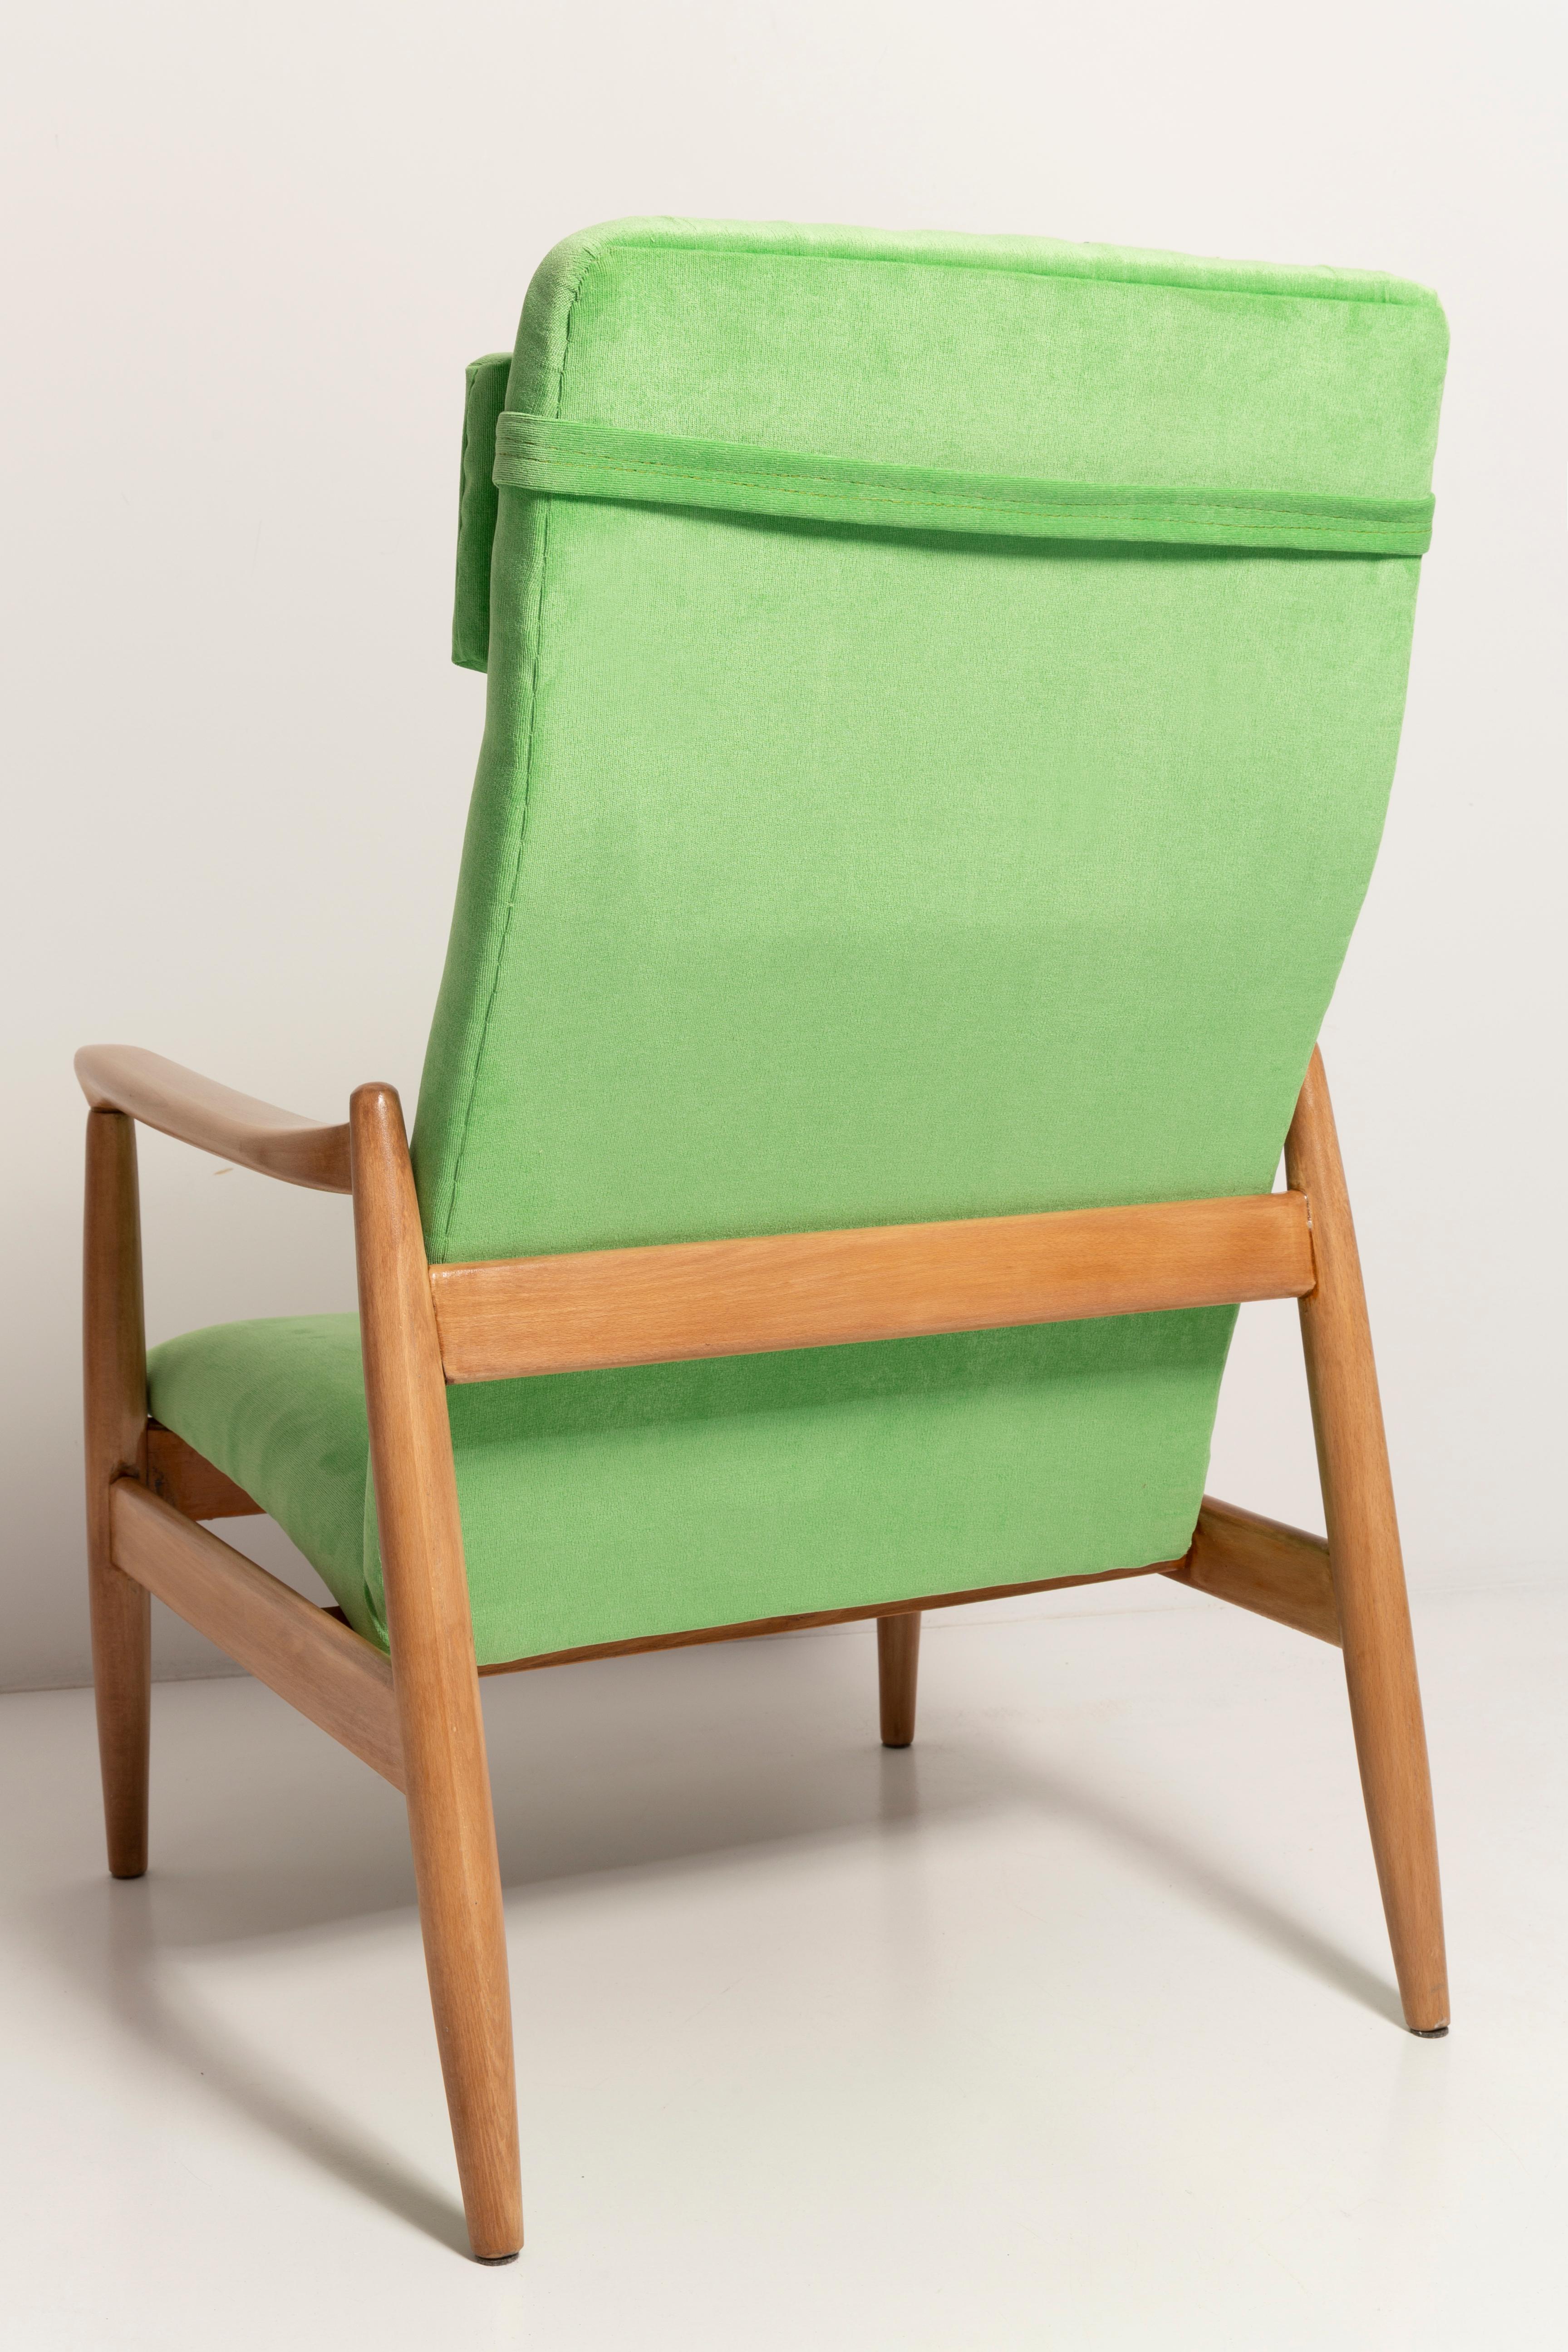 Light Lime Green Velvet Armchair, GFM-64 High, Edmund Homa, 1960s For Sale 5